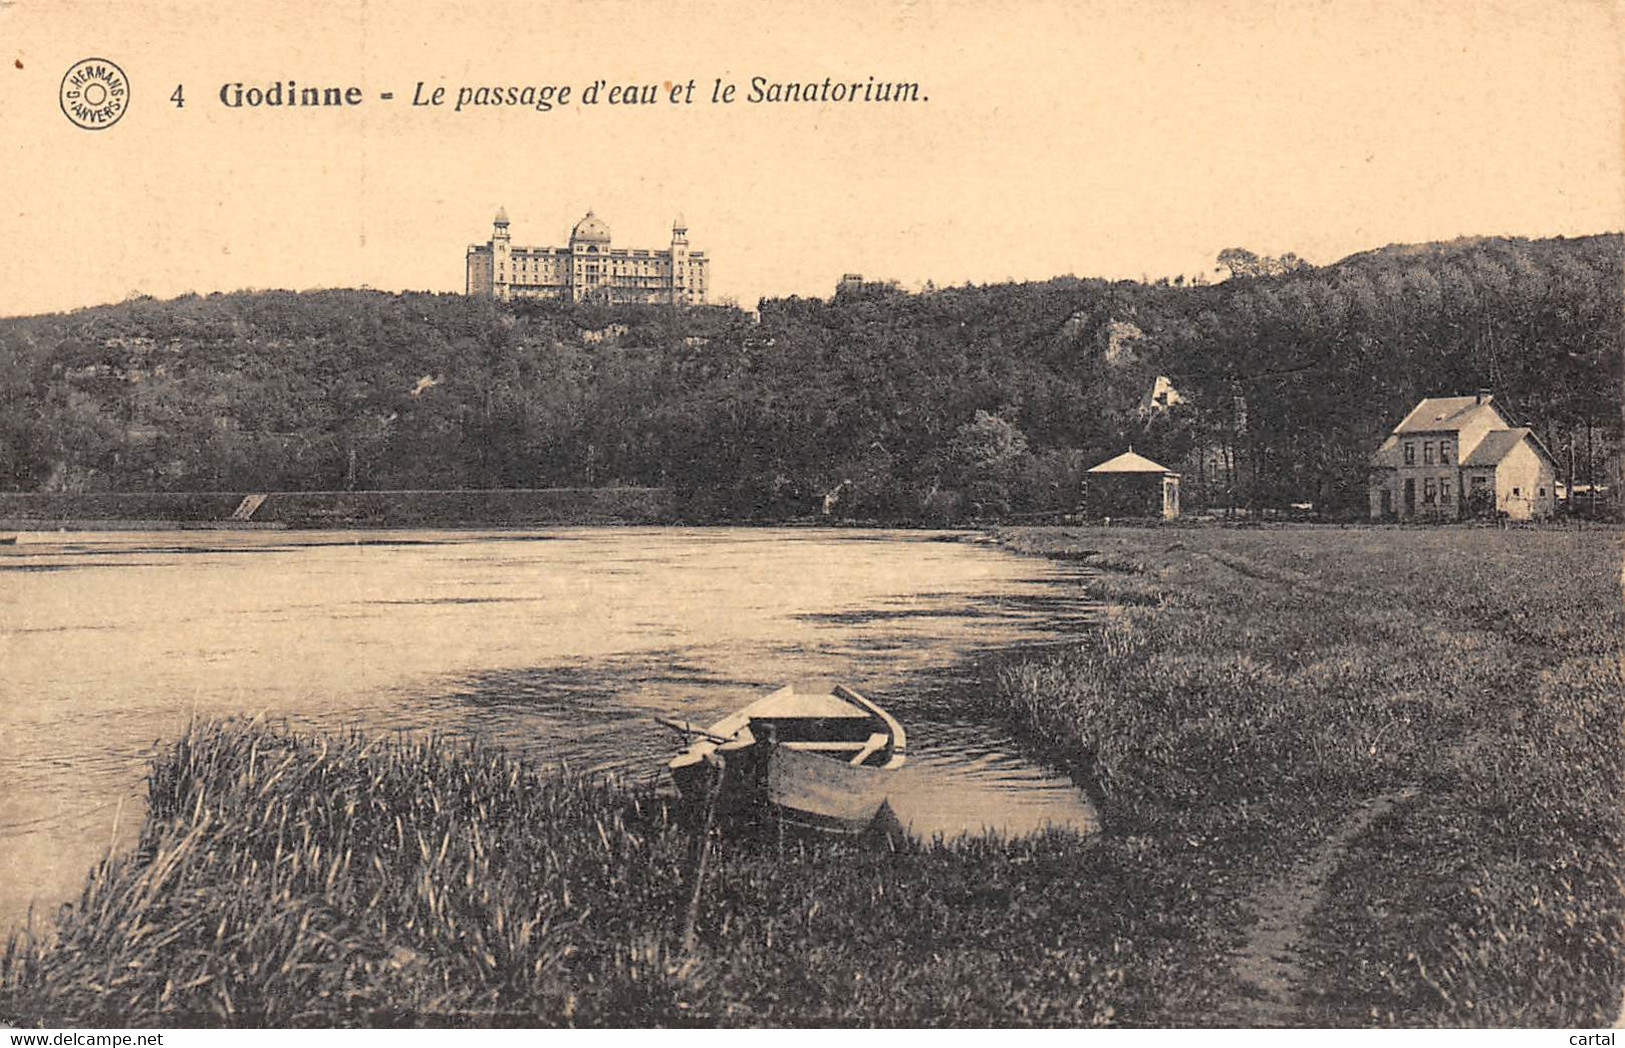 GODINNE - Le Passage D'eau Et Le Sanatorium - Yvoir